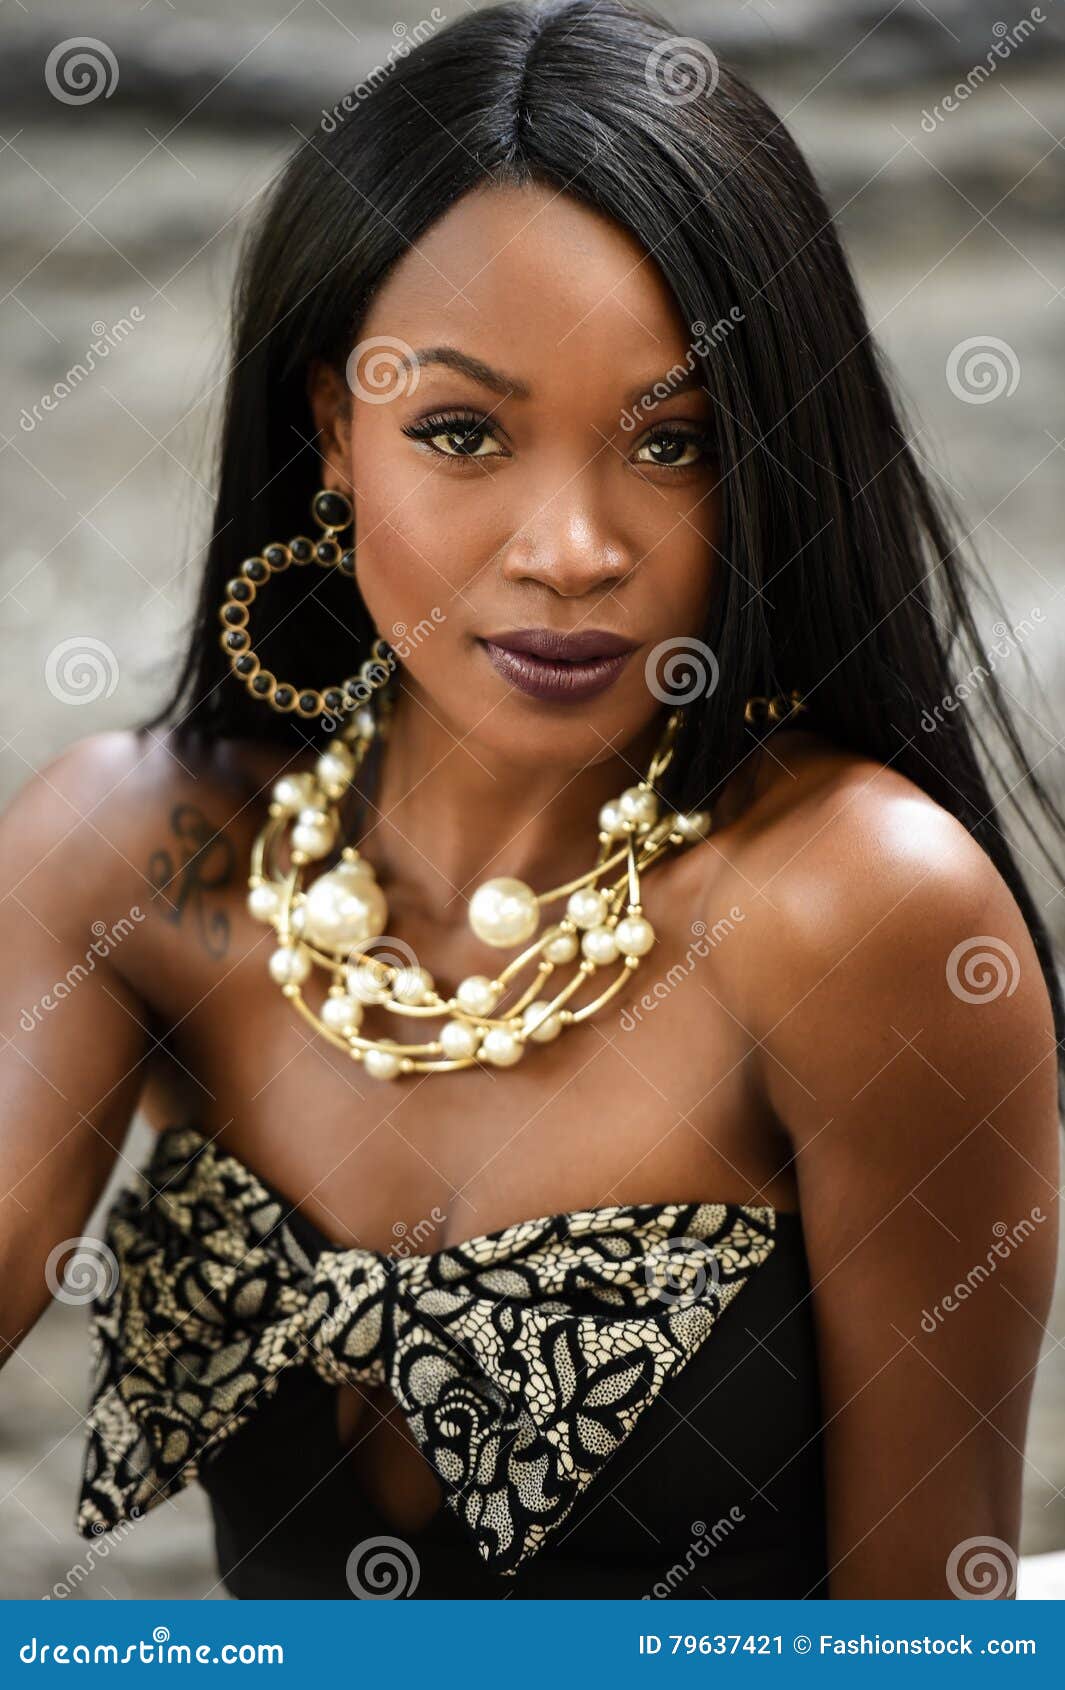 Women exotic african Top